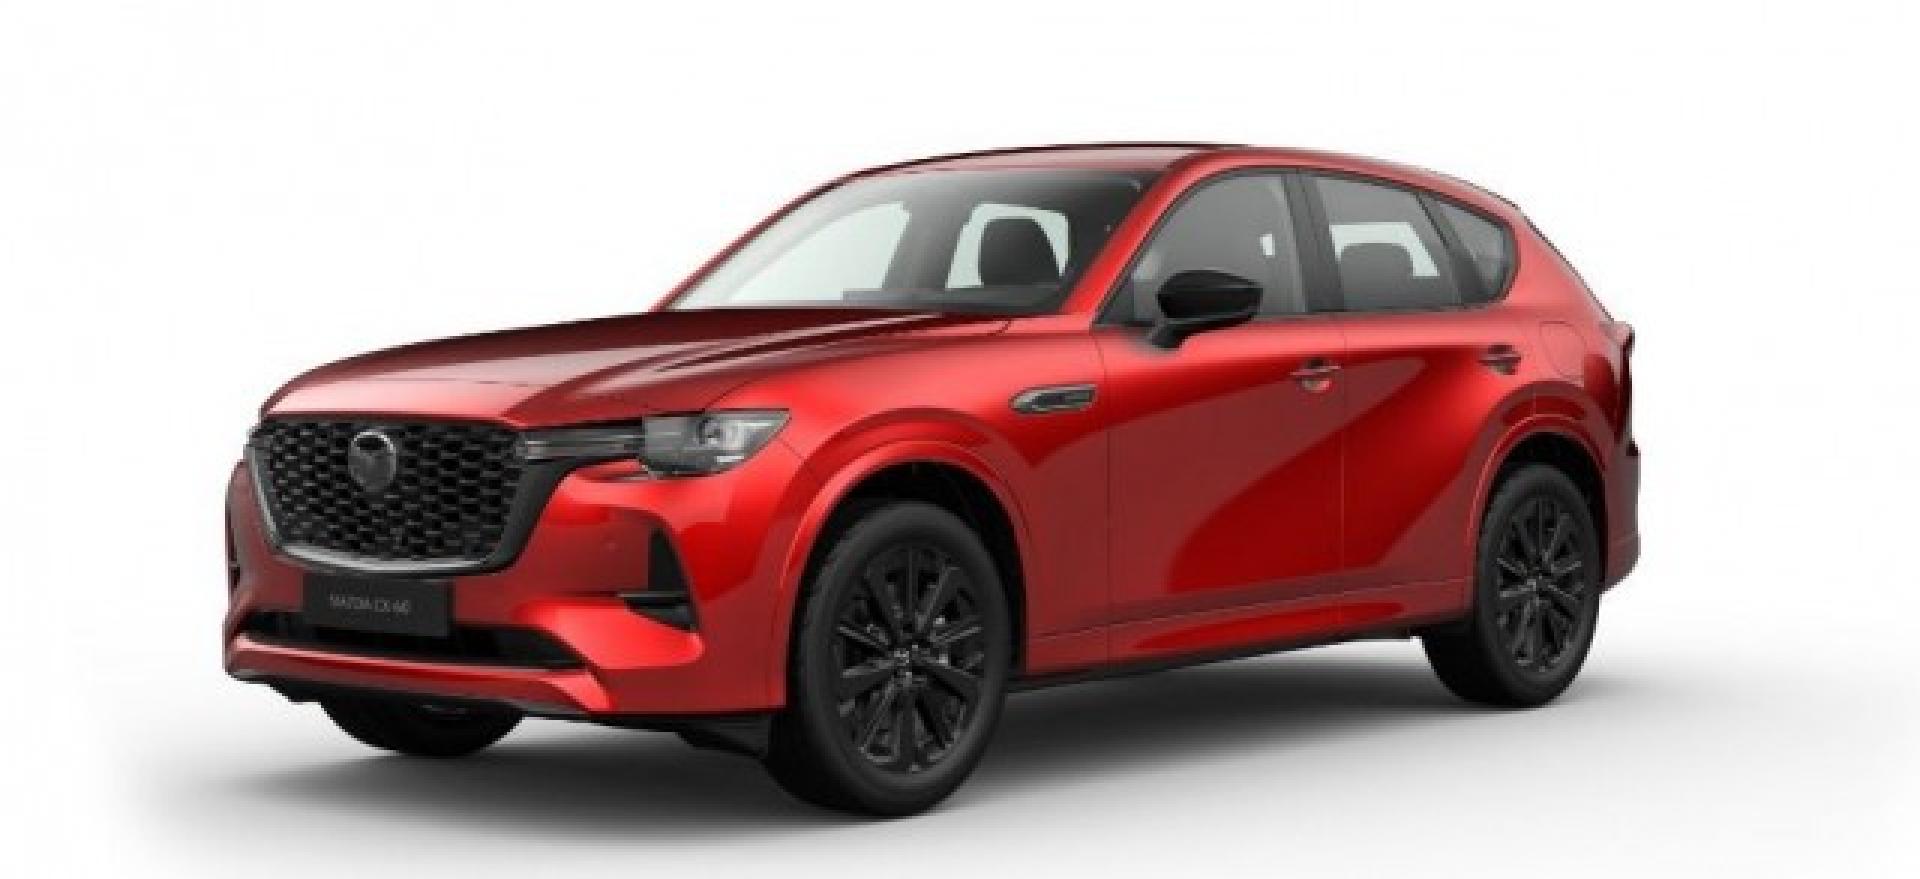 Tweedehands Mazda occasion kopen